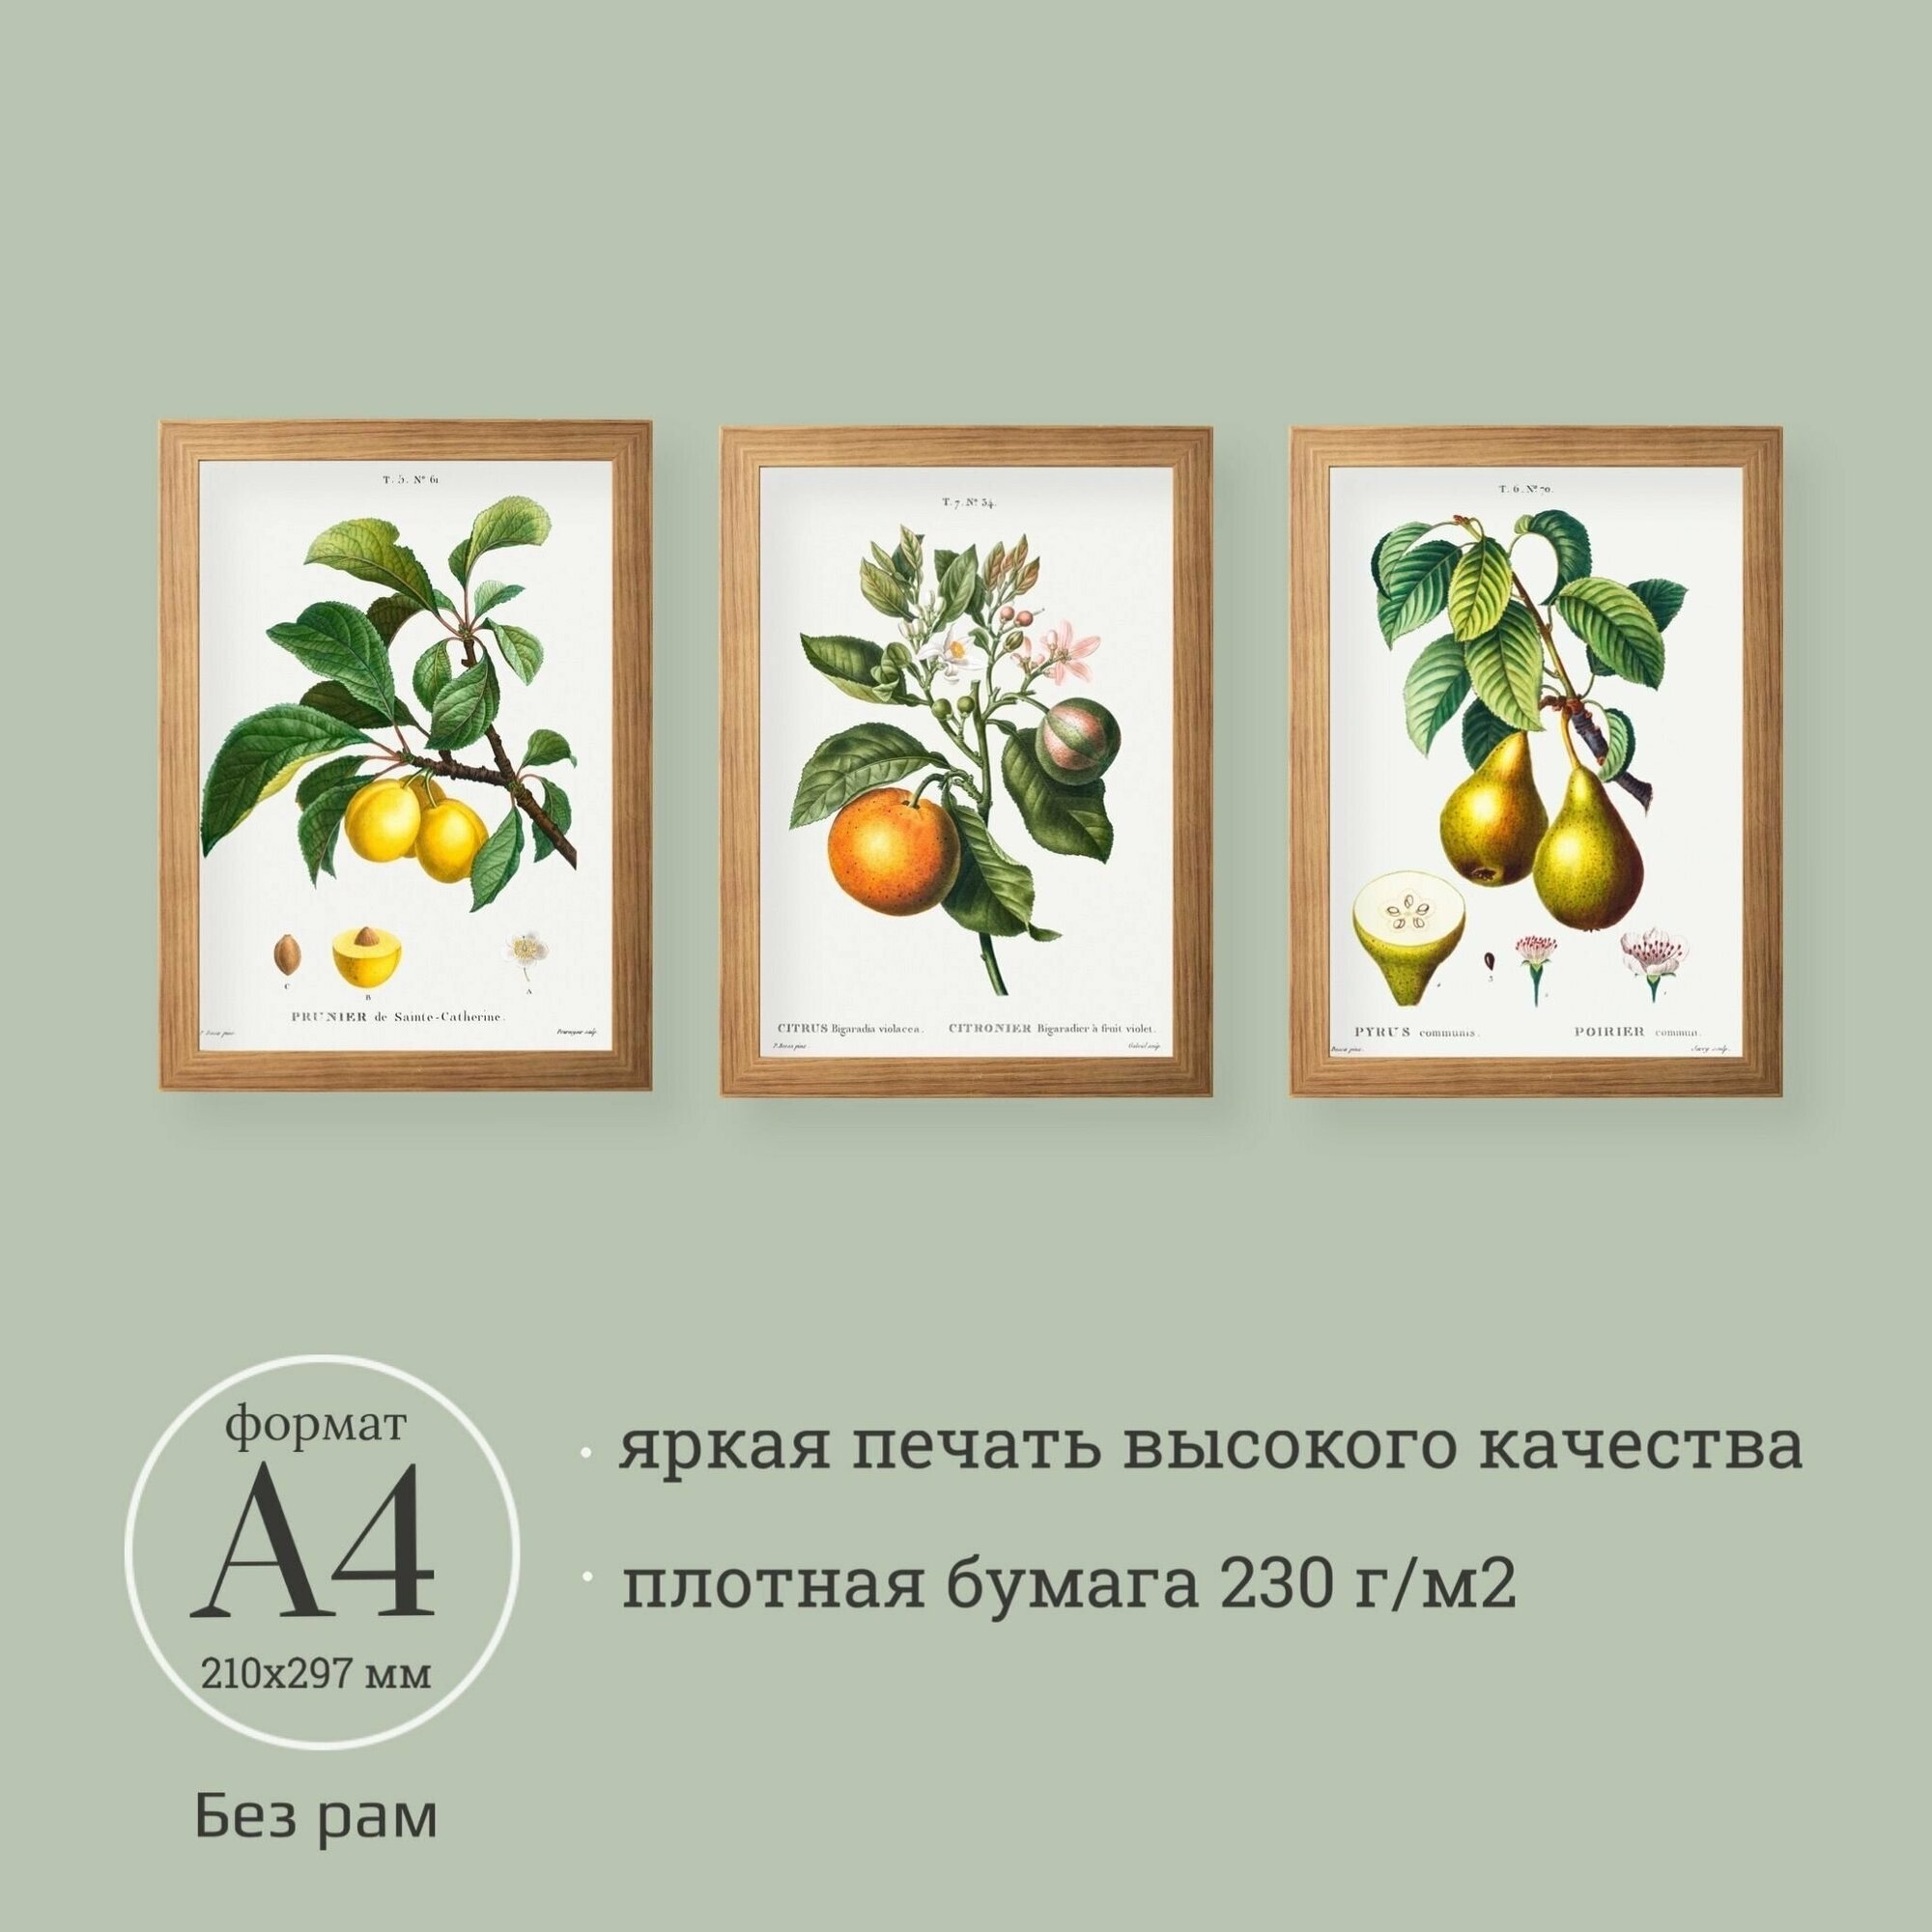 Постеры с ботаническими иллюстрациями 3 шт. А4